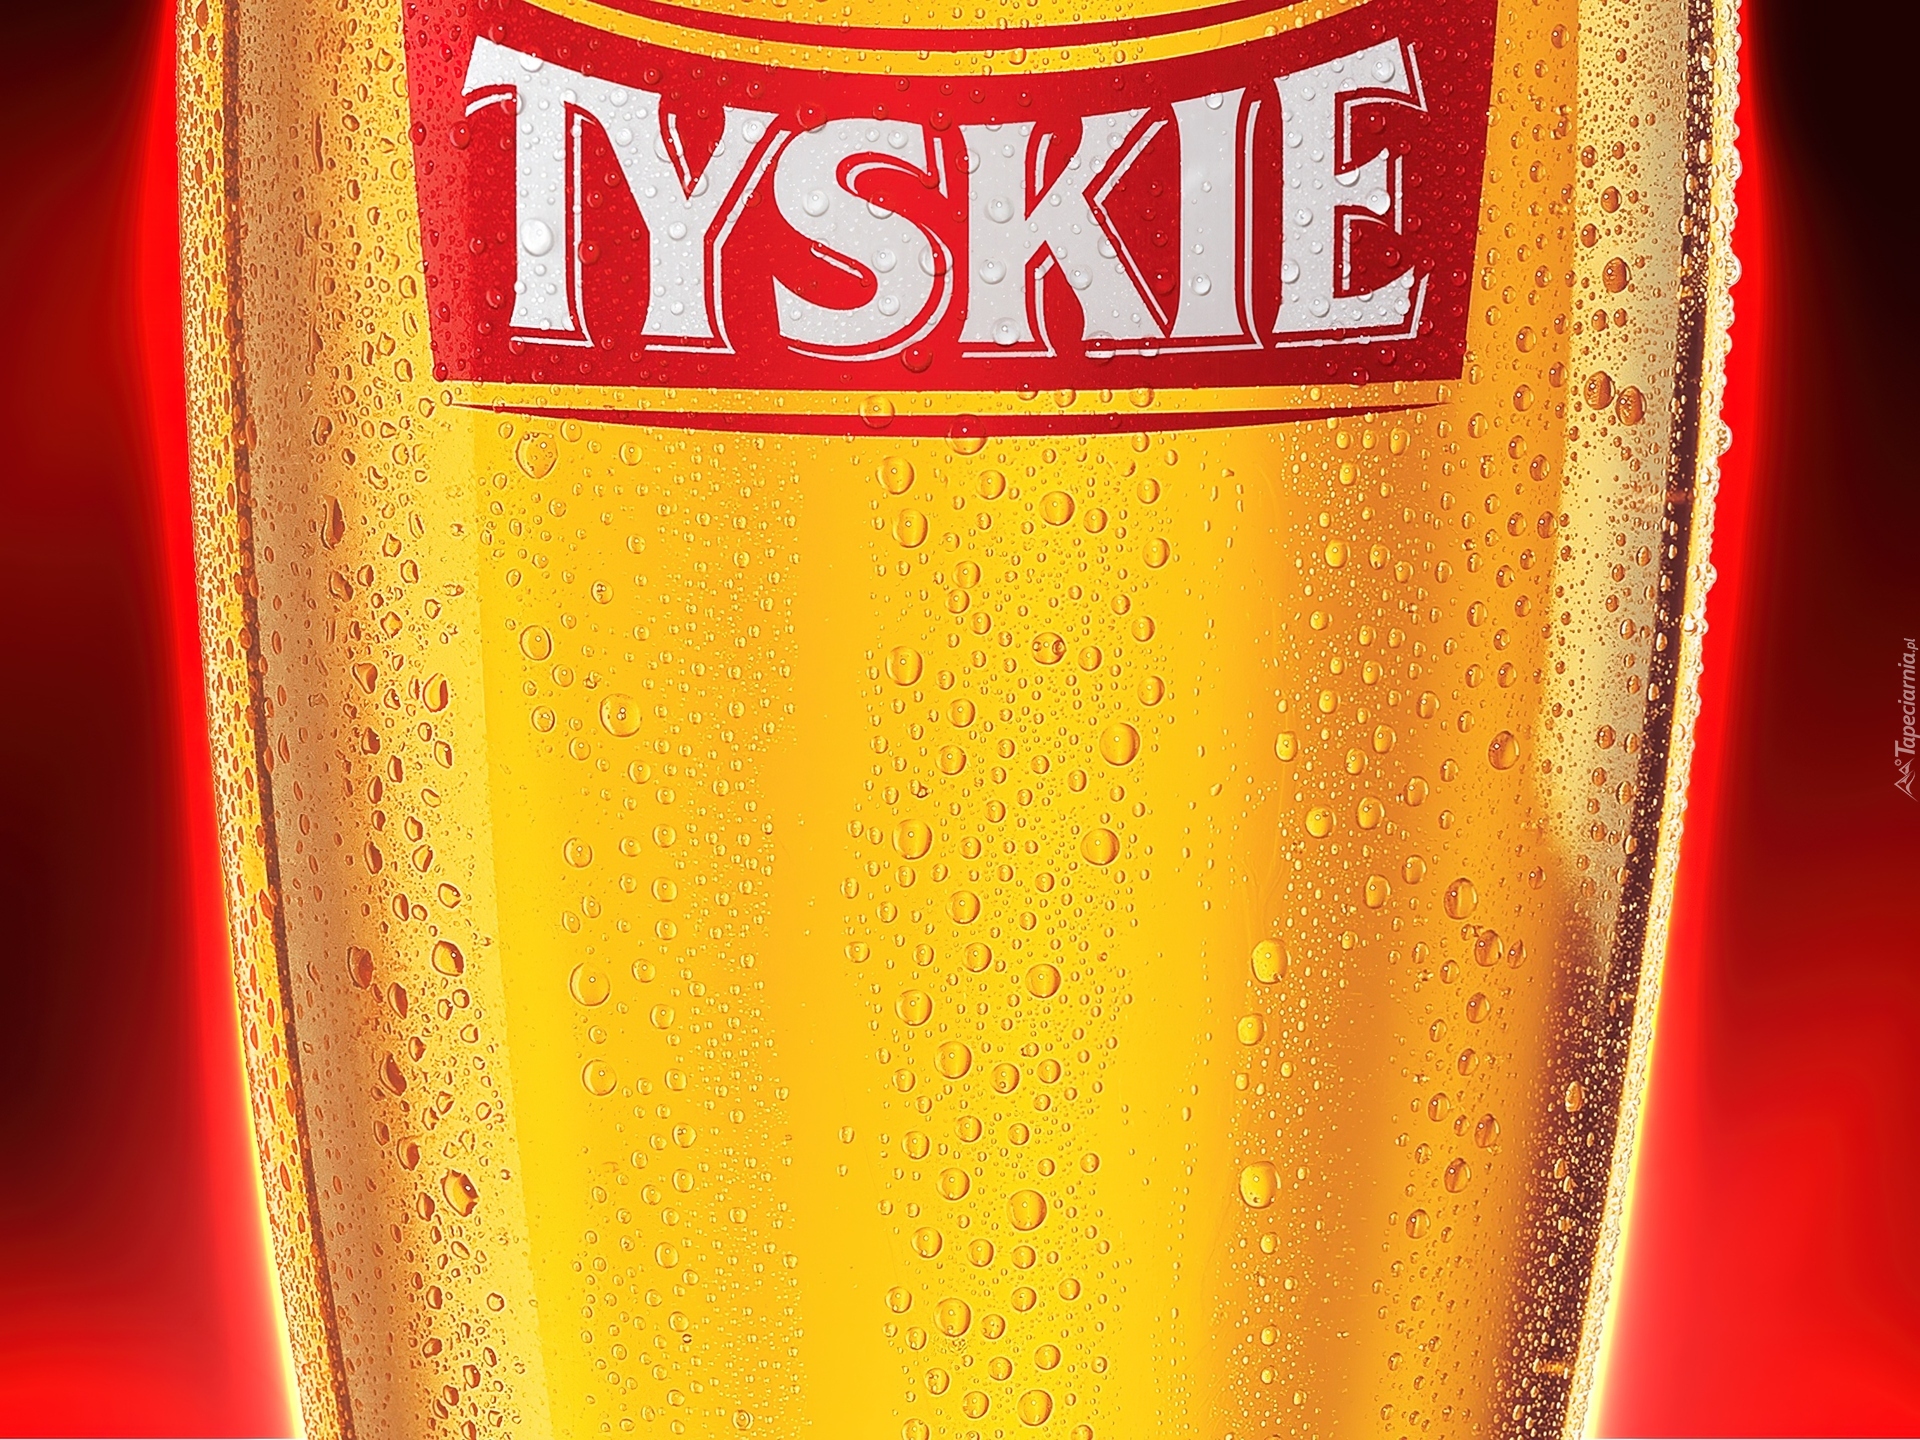 Piwo Tyskie, Pokal